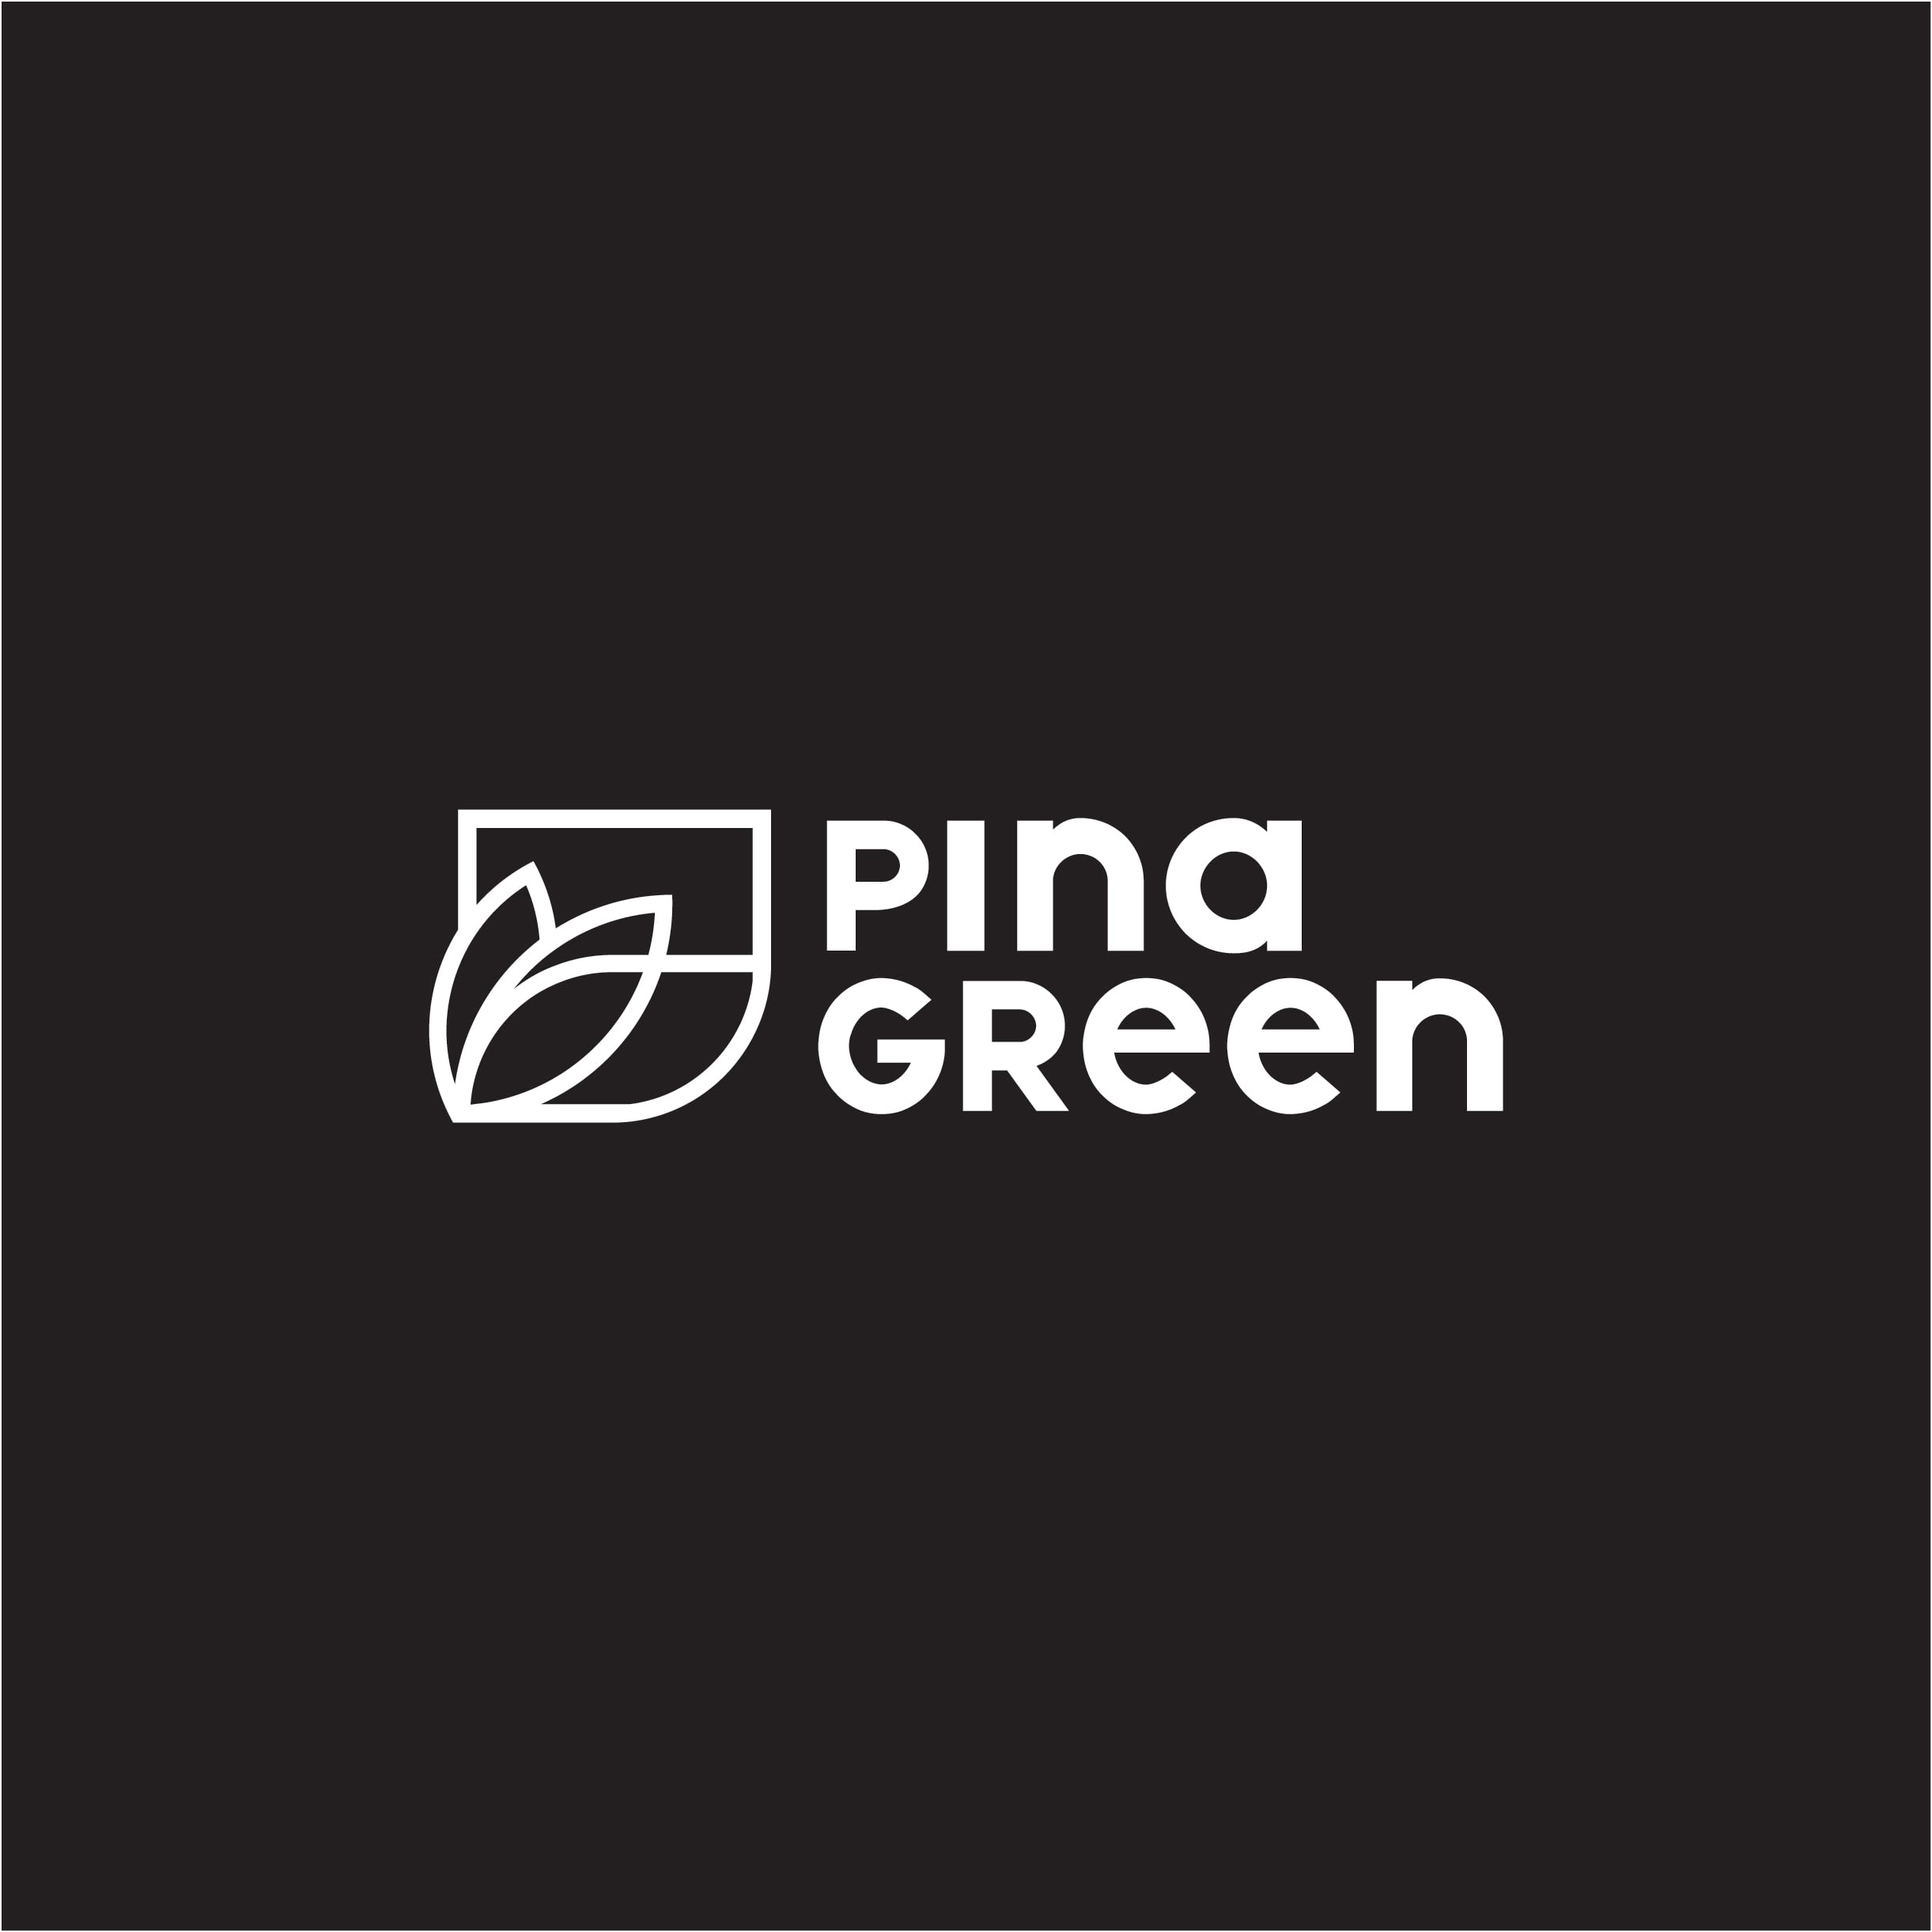 Pina Green